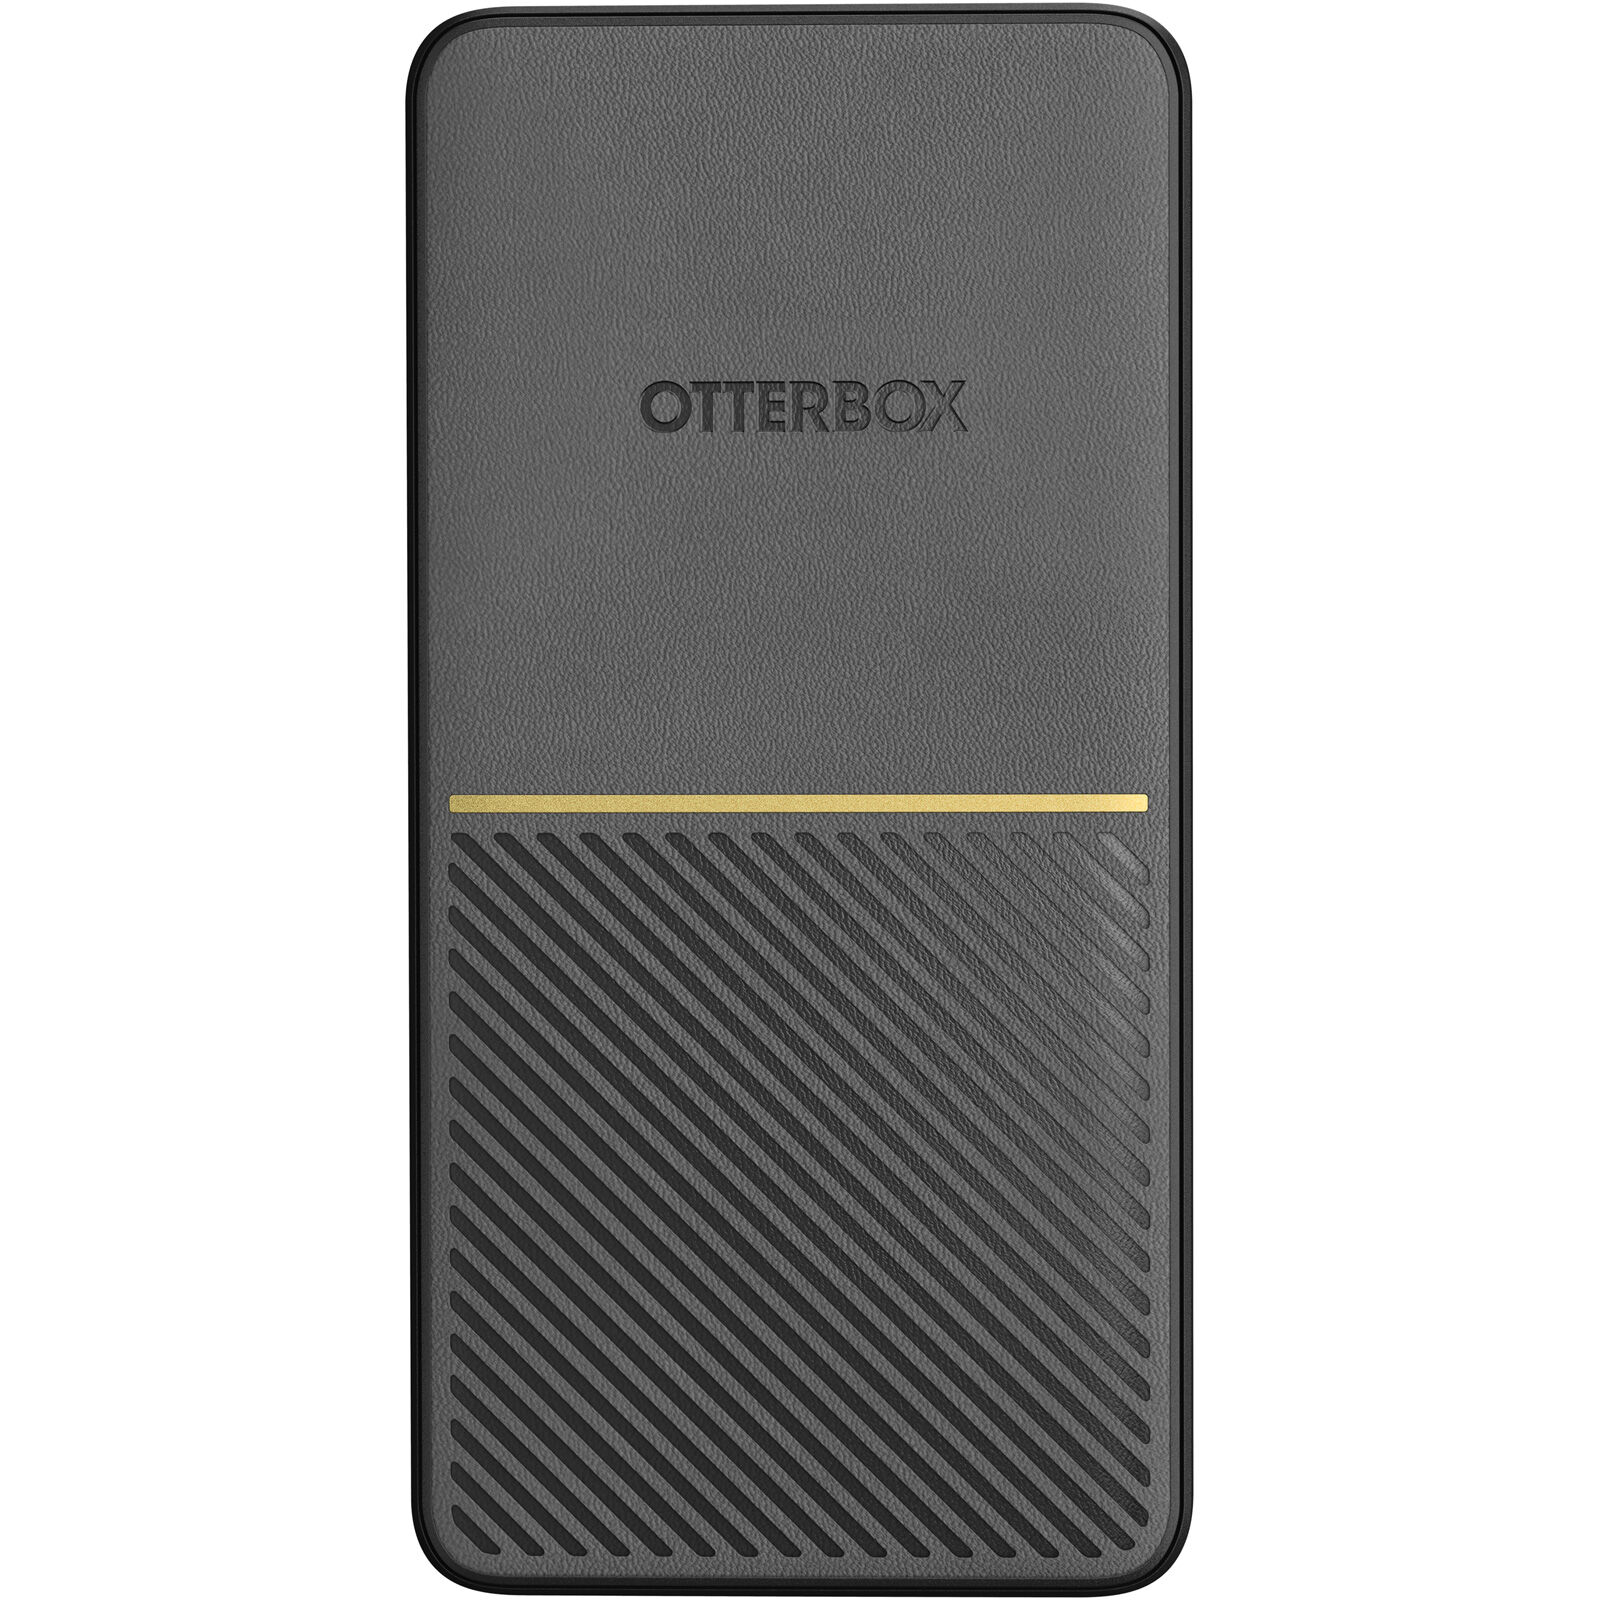 OtterBox Power Bank 20K MAH USB A&C 18W USB-PD - Black